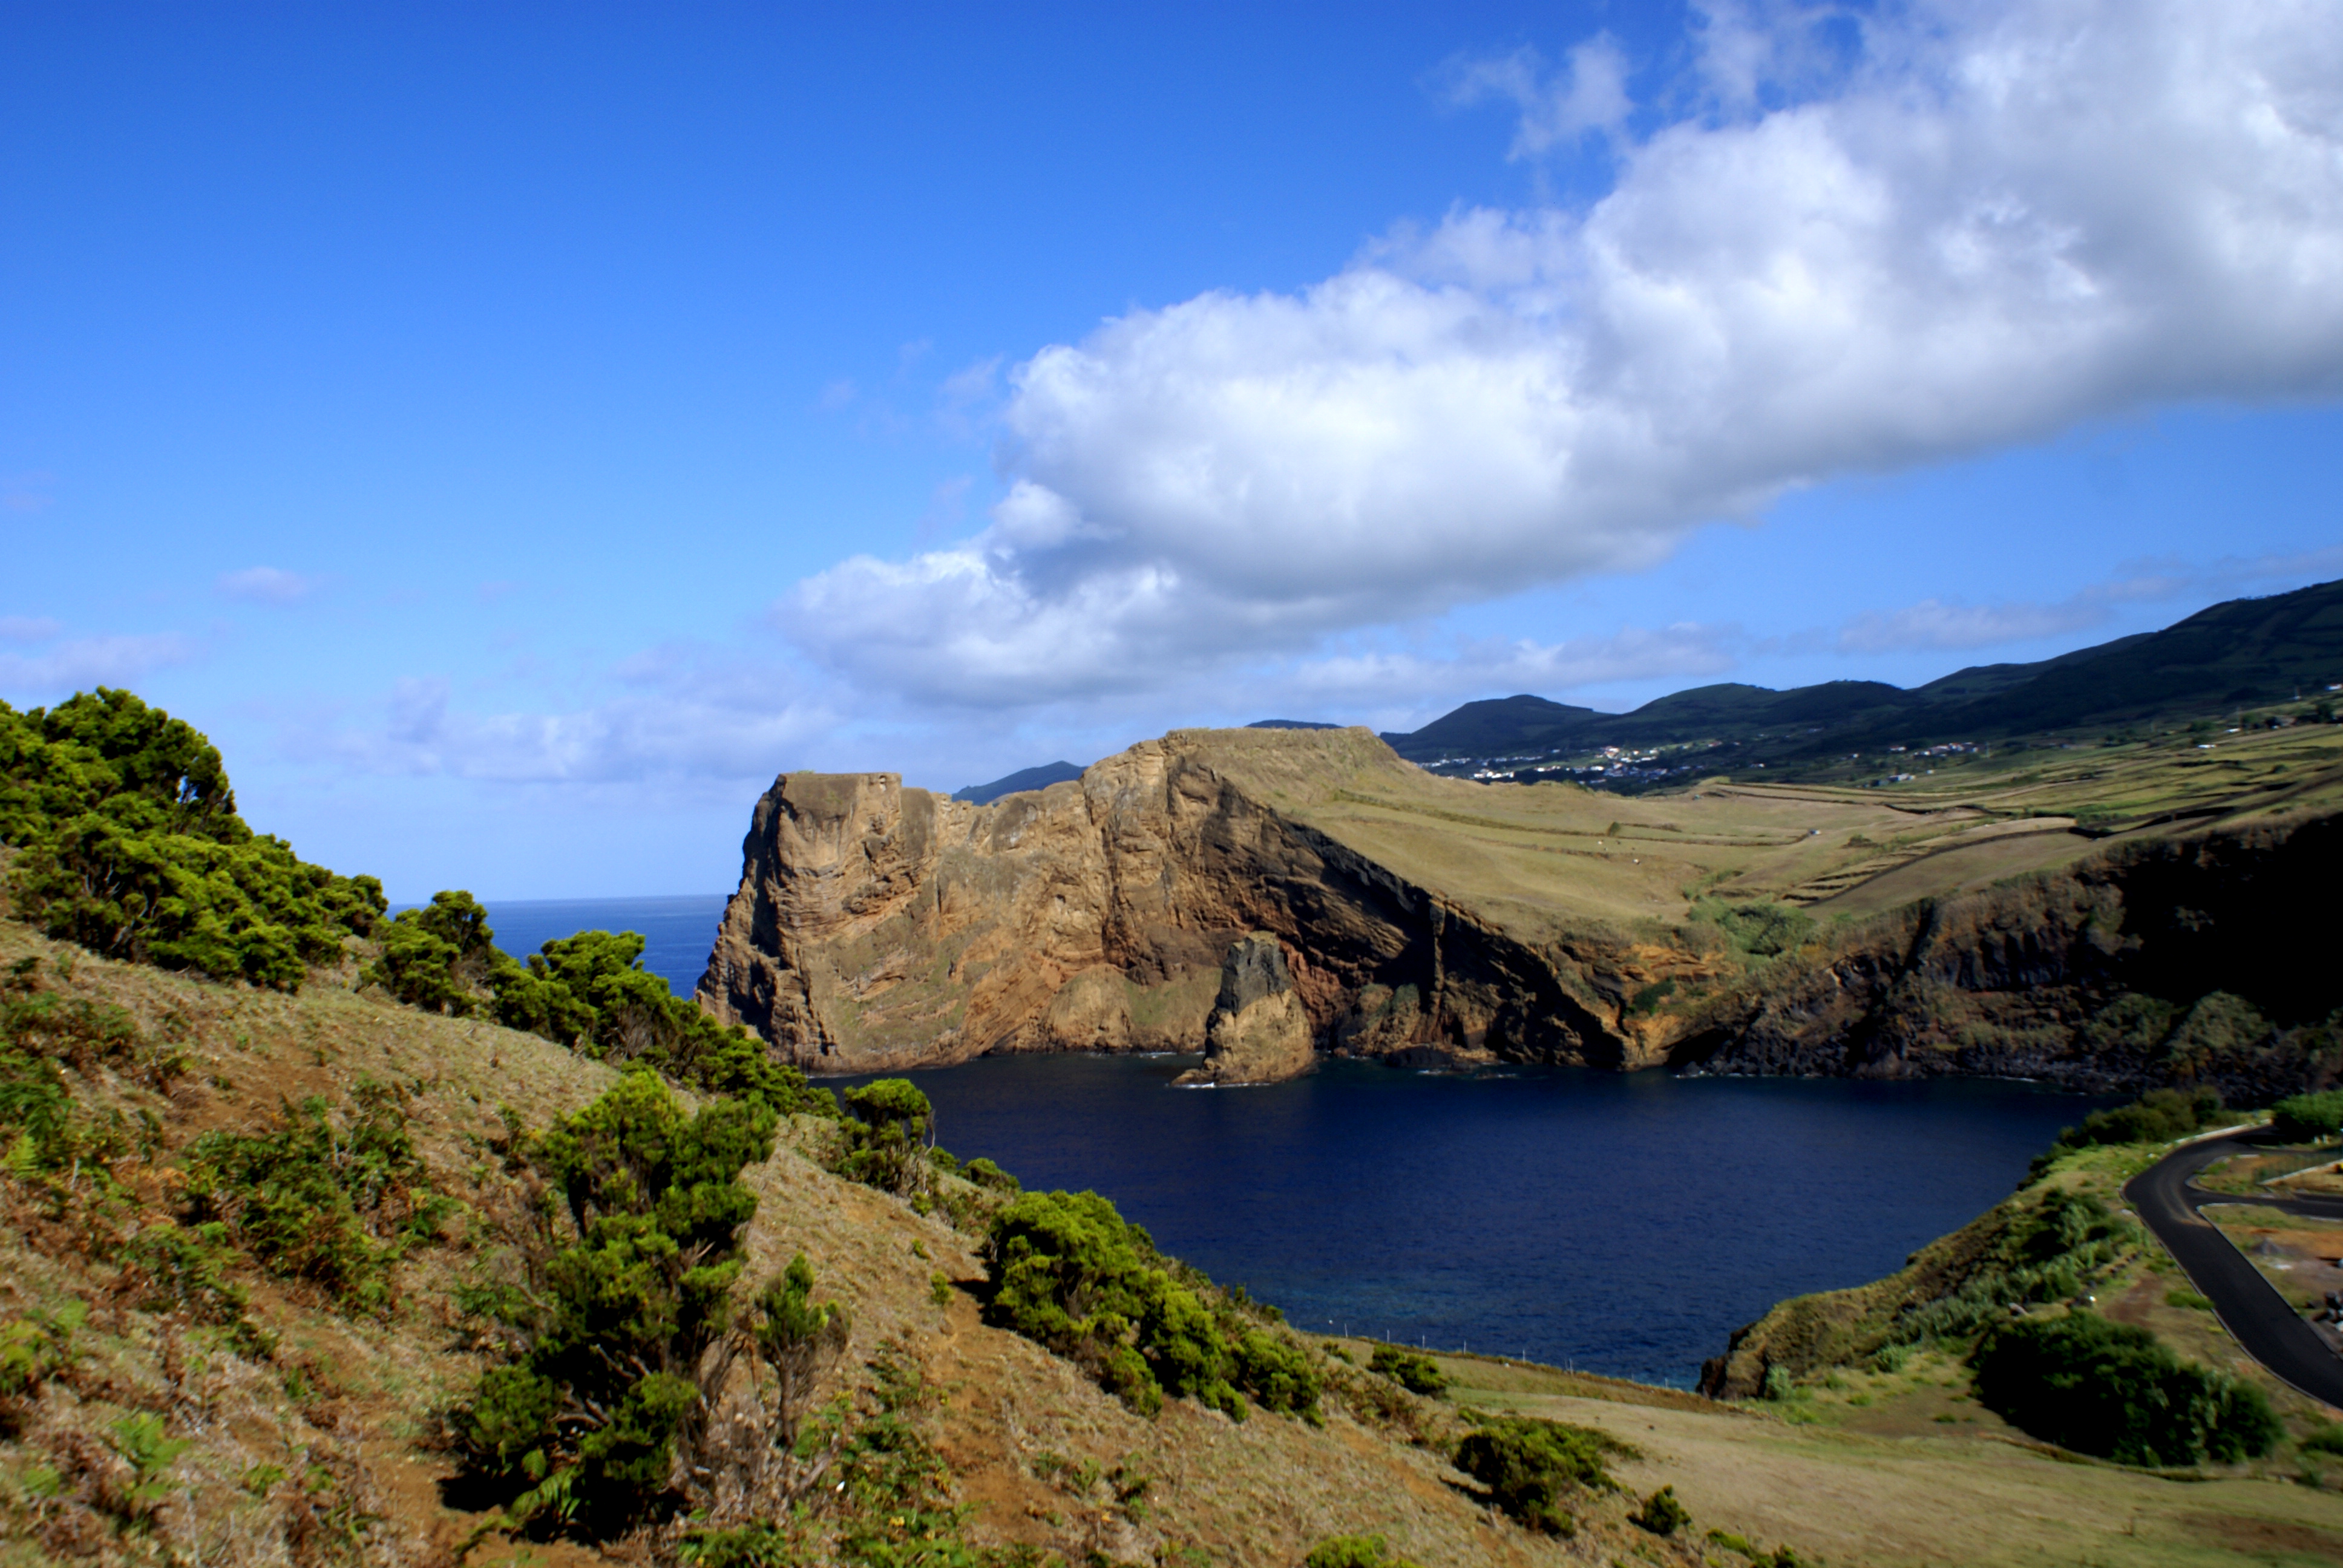 File:Antigo moinho de vento, Morro das Velas, Velas, ilha de São Jorge,  Açores.JPG - Wikipedia